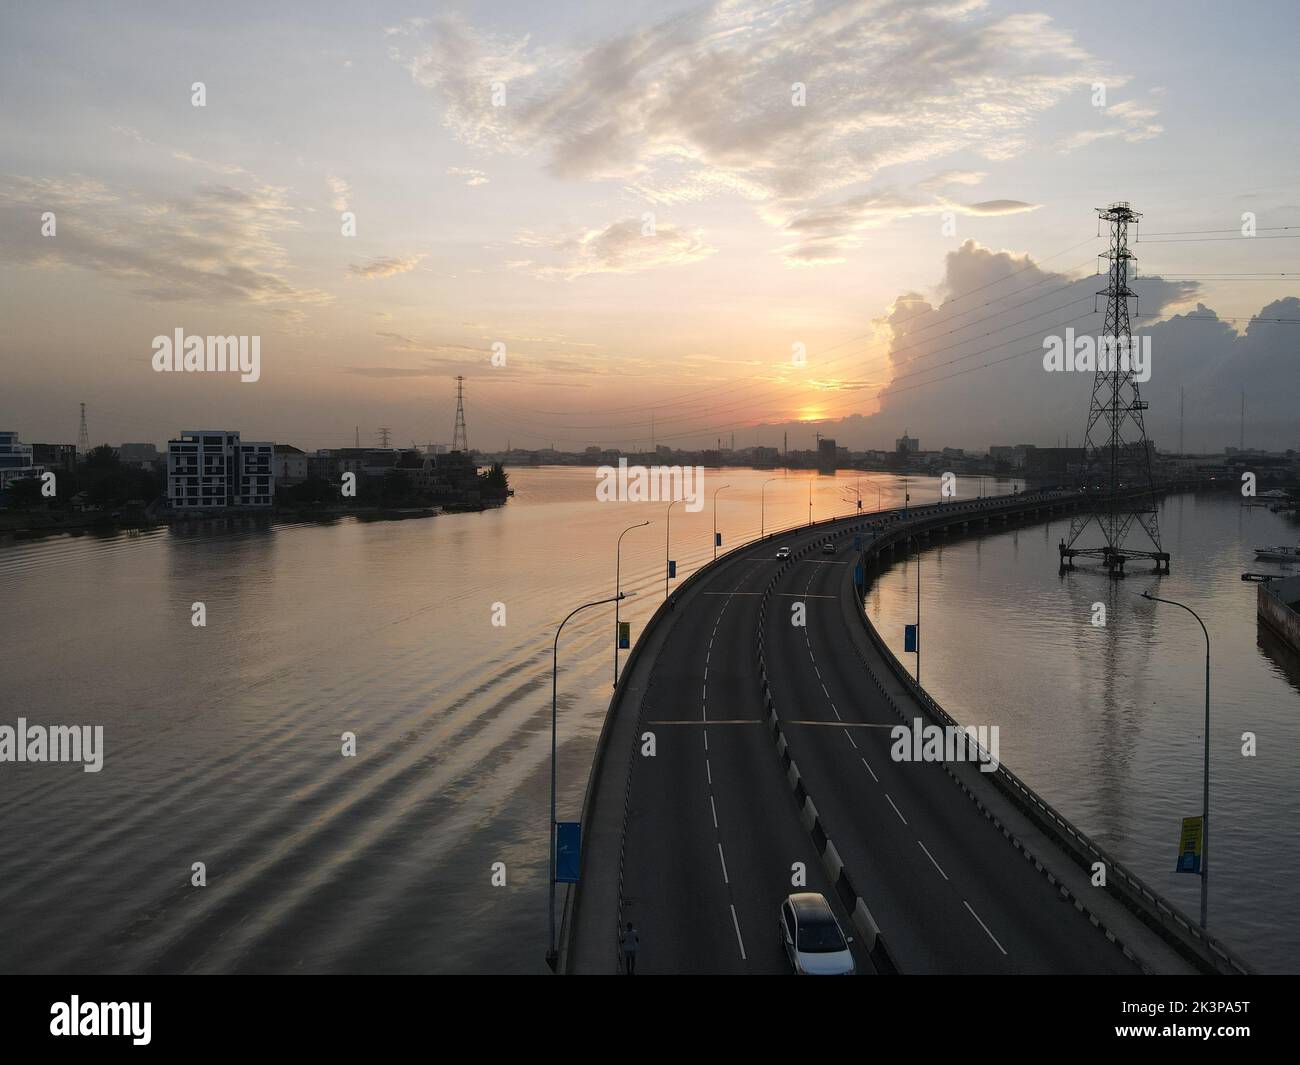 Vue aérienne d'un pont autoroutier sur un canal à Lagos, au Nigeria, au coucher du soleil Banque D'Images